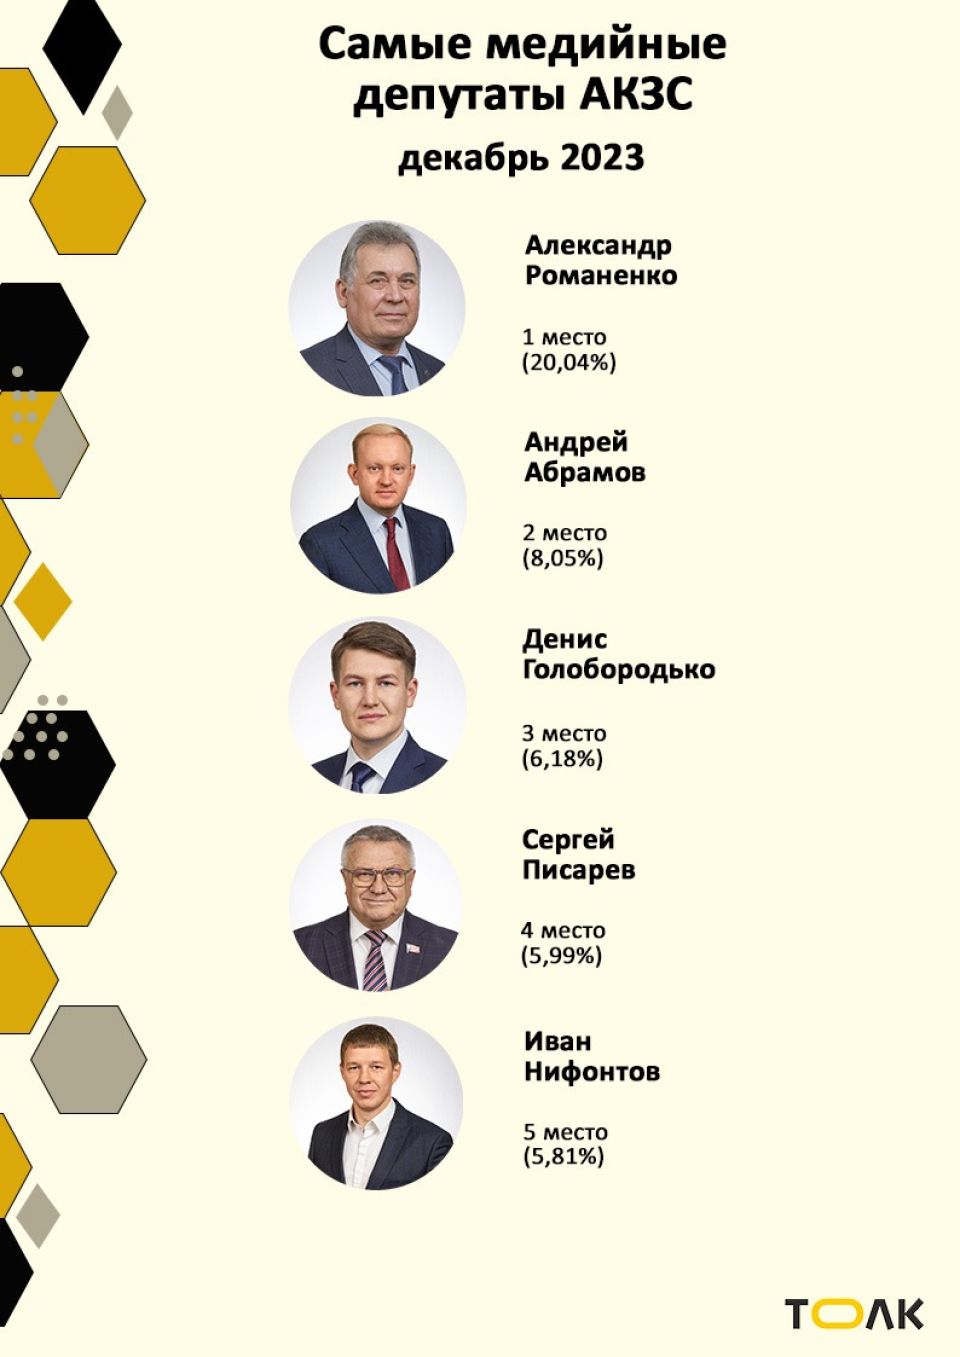 Рейтинг медийности депутатов АКЗС в декабре 2023 года